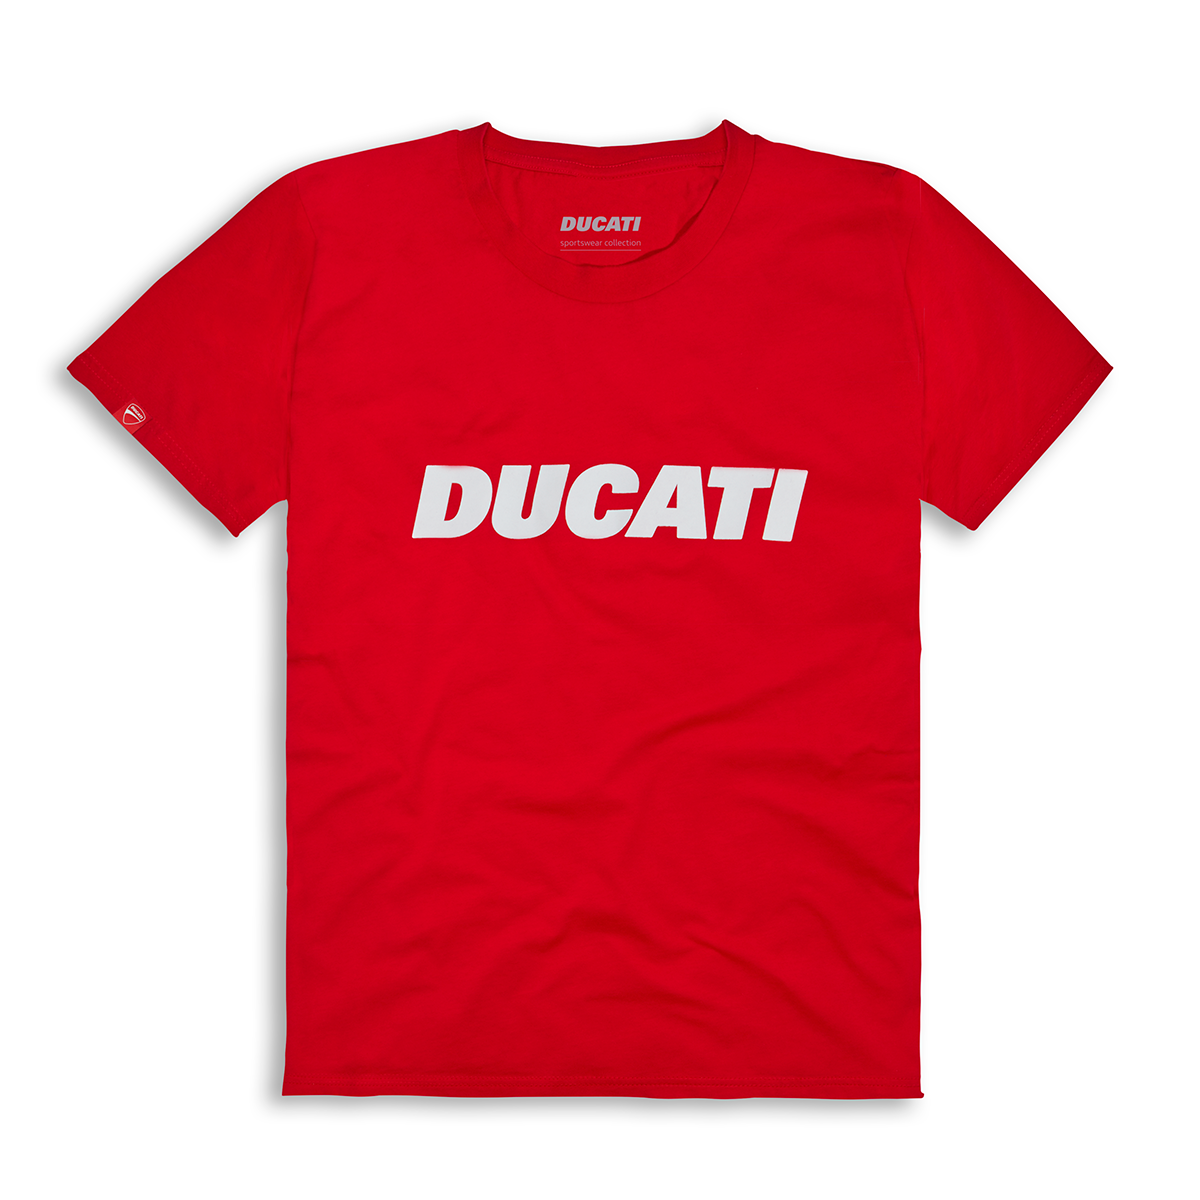 Ducati Ducatiana 2.0 Kid's Tee